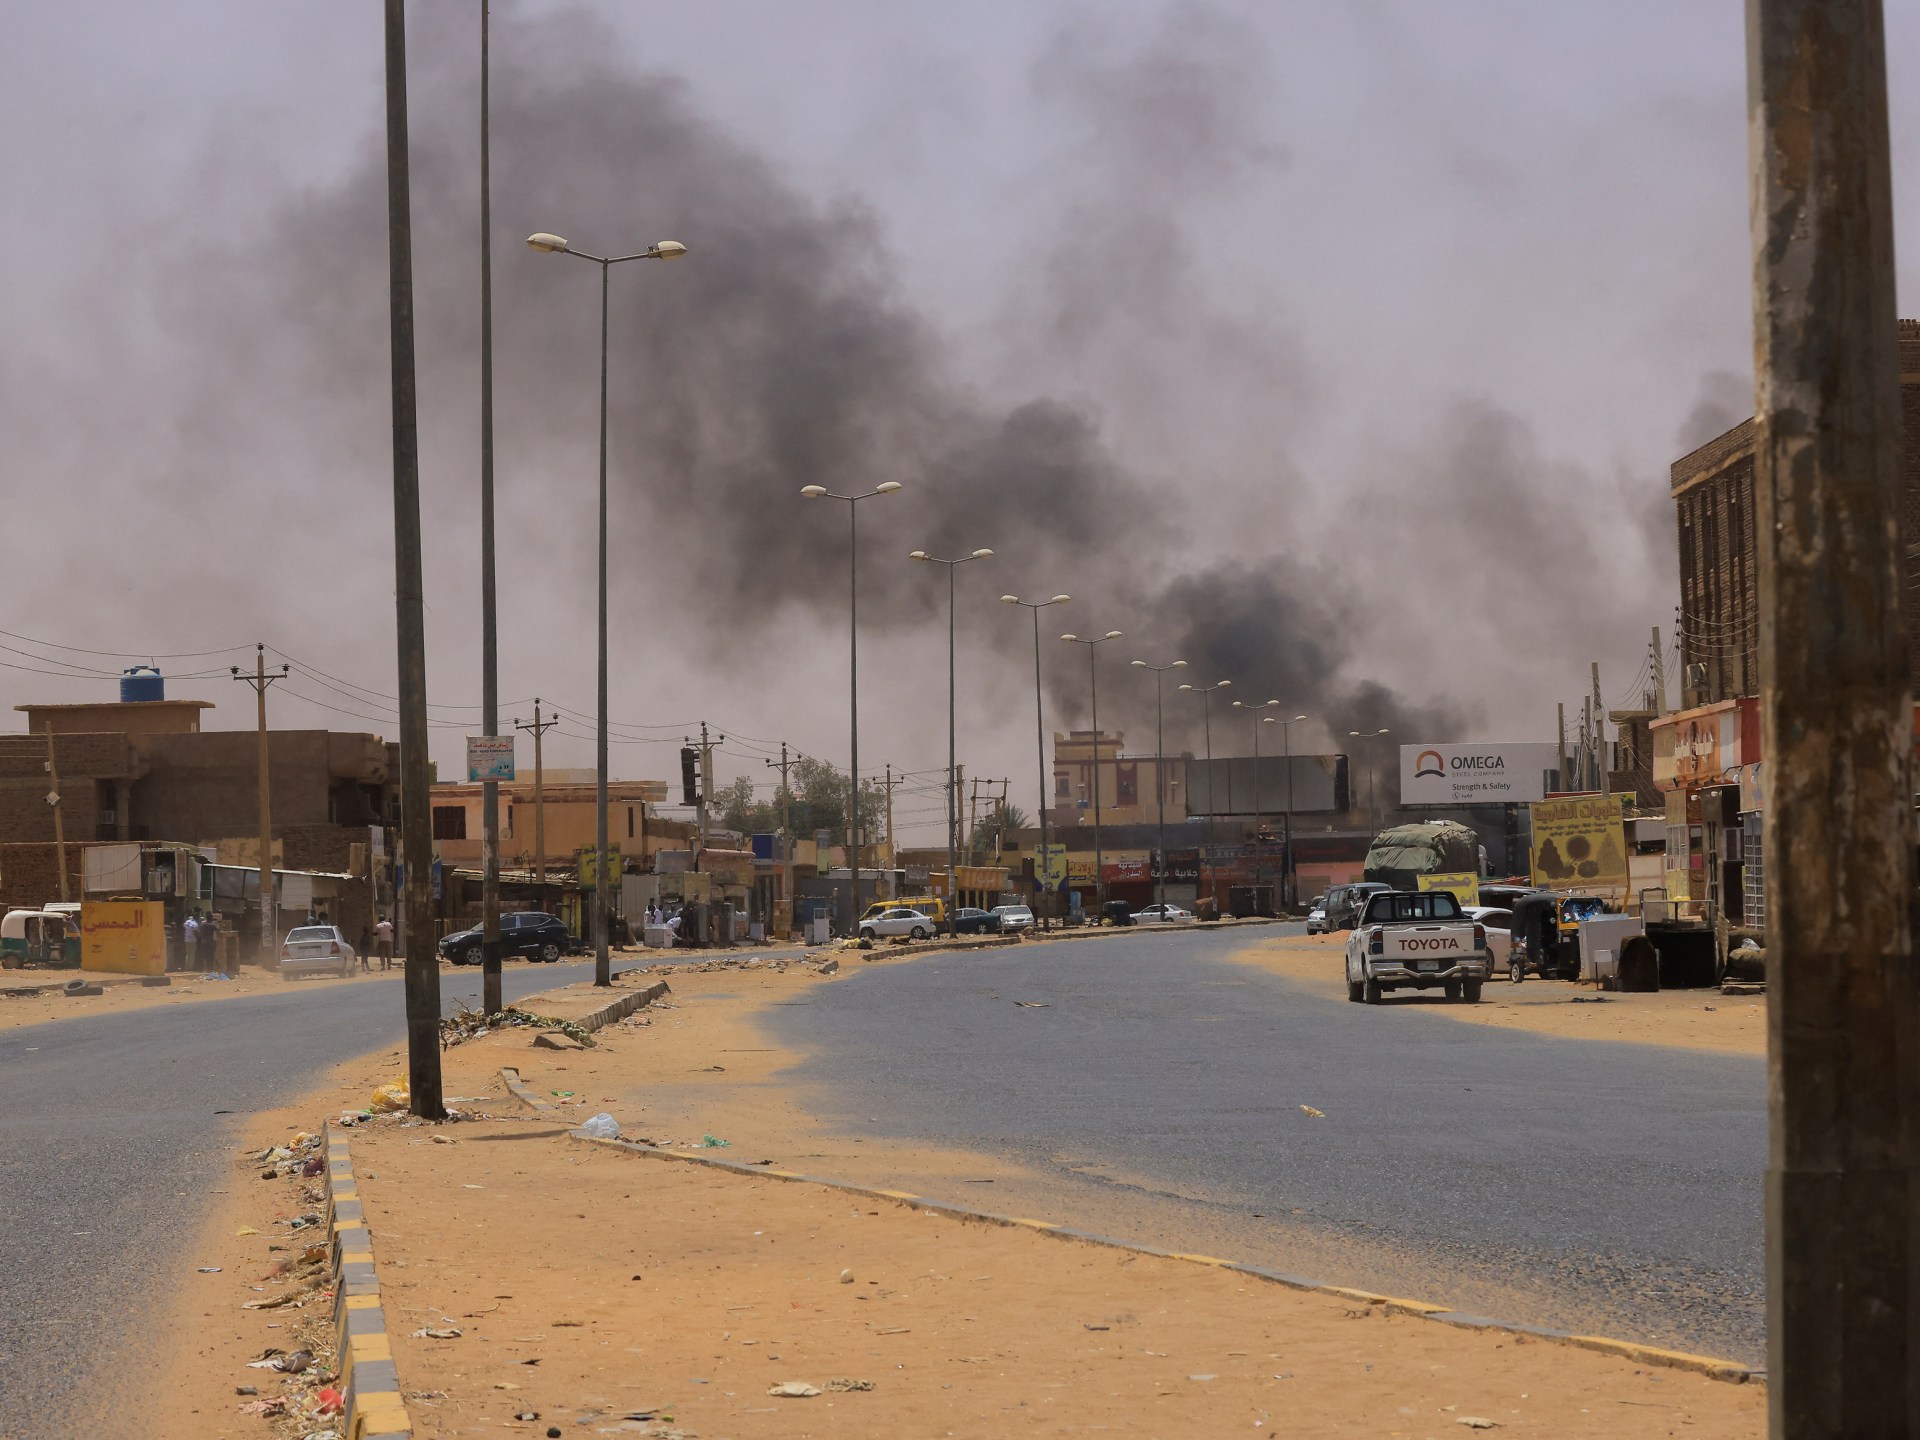 أكثر من 20 قتيلا إثر سقوط قذائف في سوق شعبي بالخرطوم | أخبار